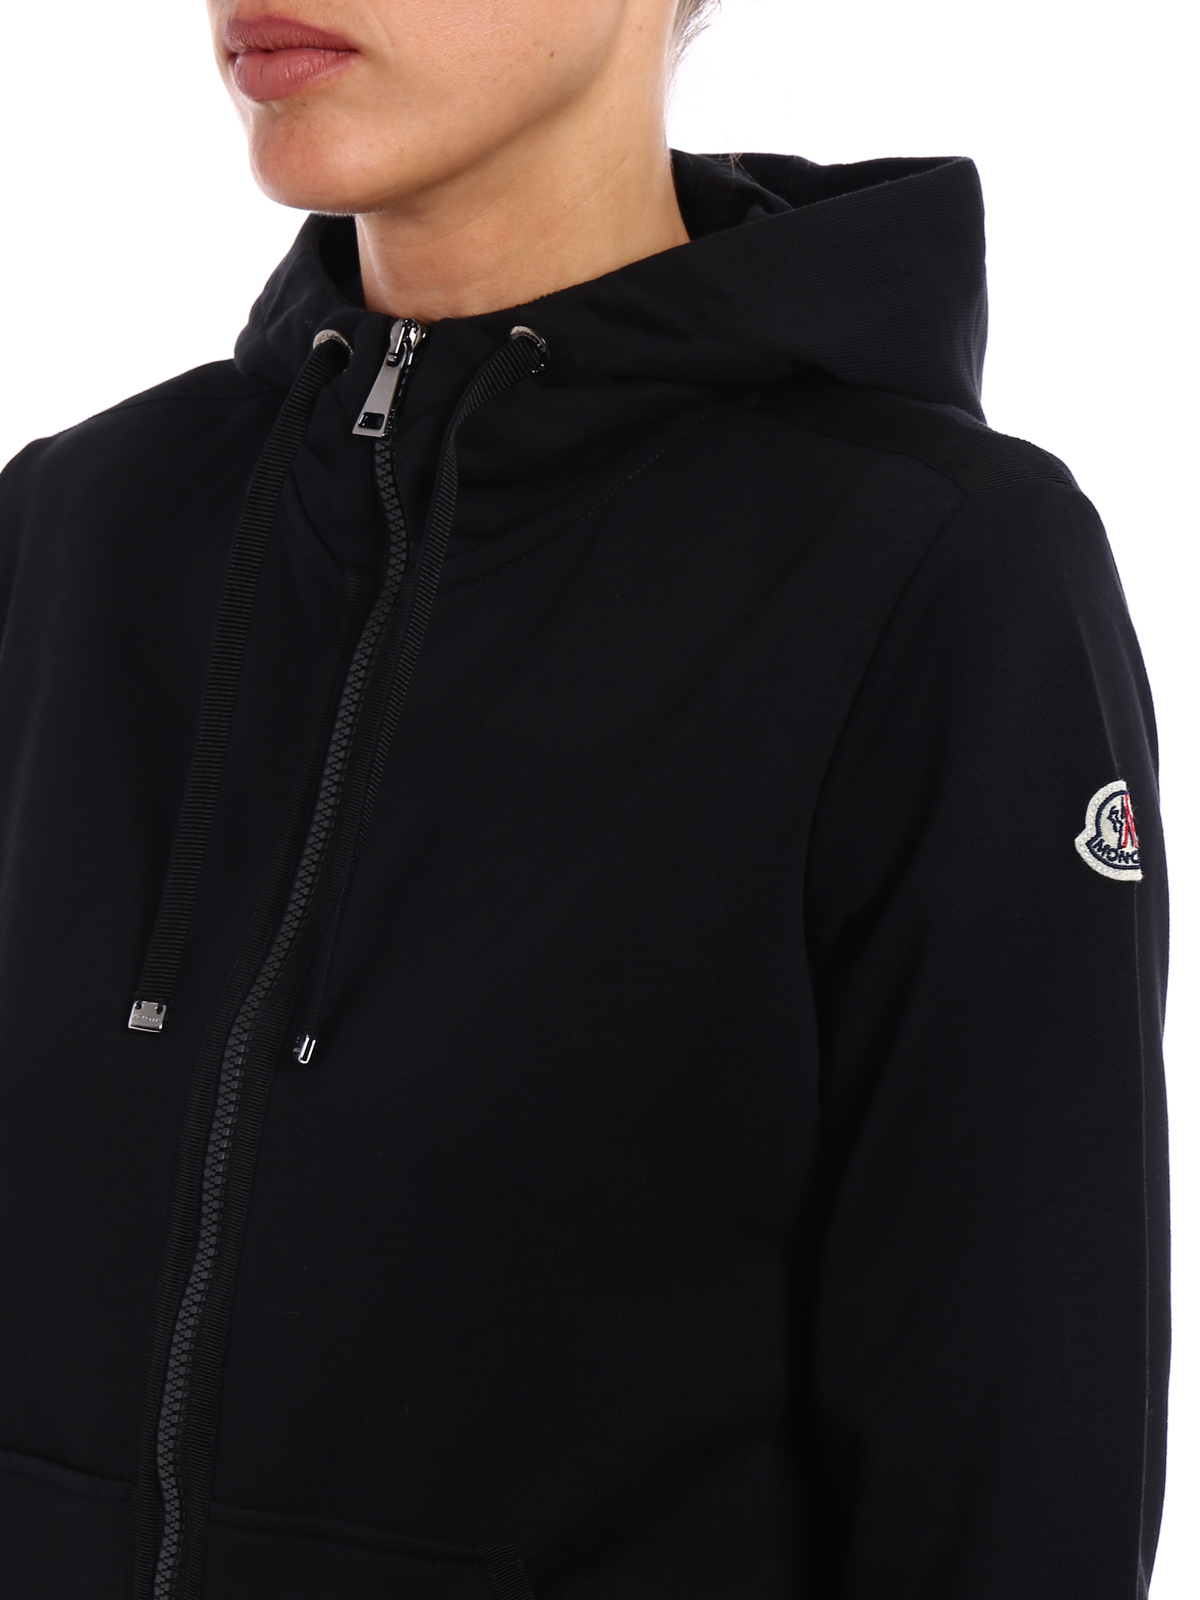 moncler black zip hoodie